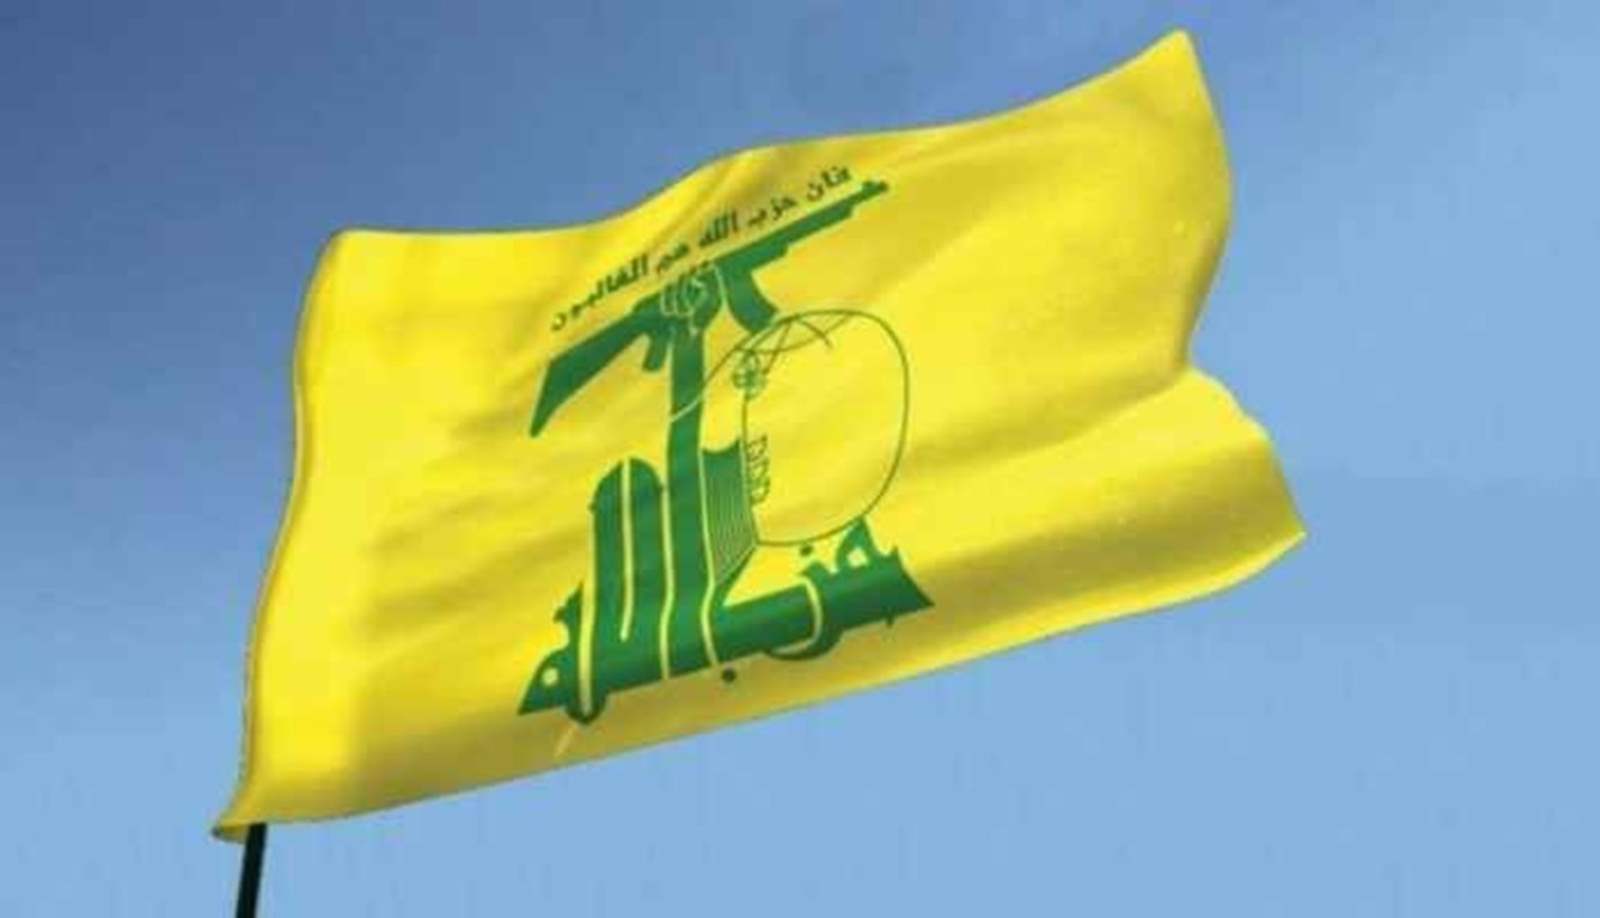 حزب الله يدين الانحياز الأعمى والتجاهل المقصود والمتعمّد من قبل الذين امتنعوا عمدًا عن ‏تسمية اسم الجهة التي أطلقت النار وقتلت الصحافي الشهيد عصام العبد الله